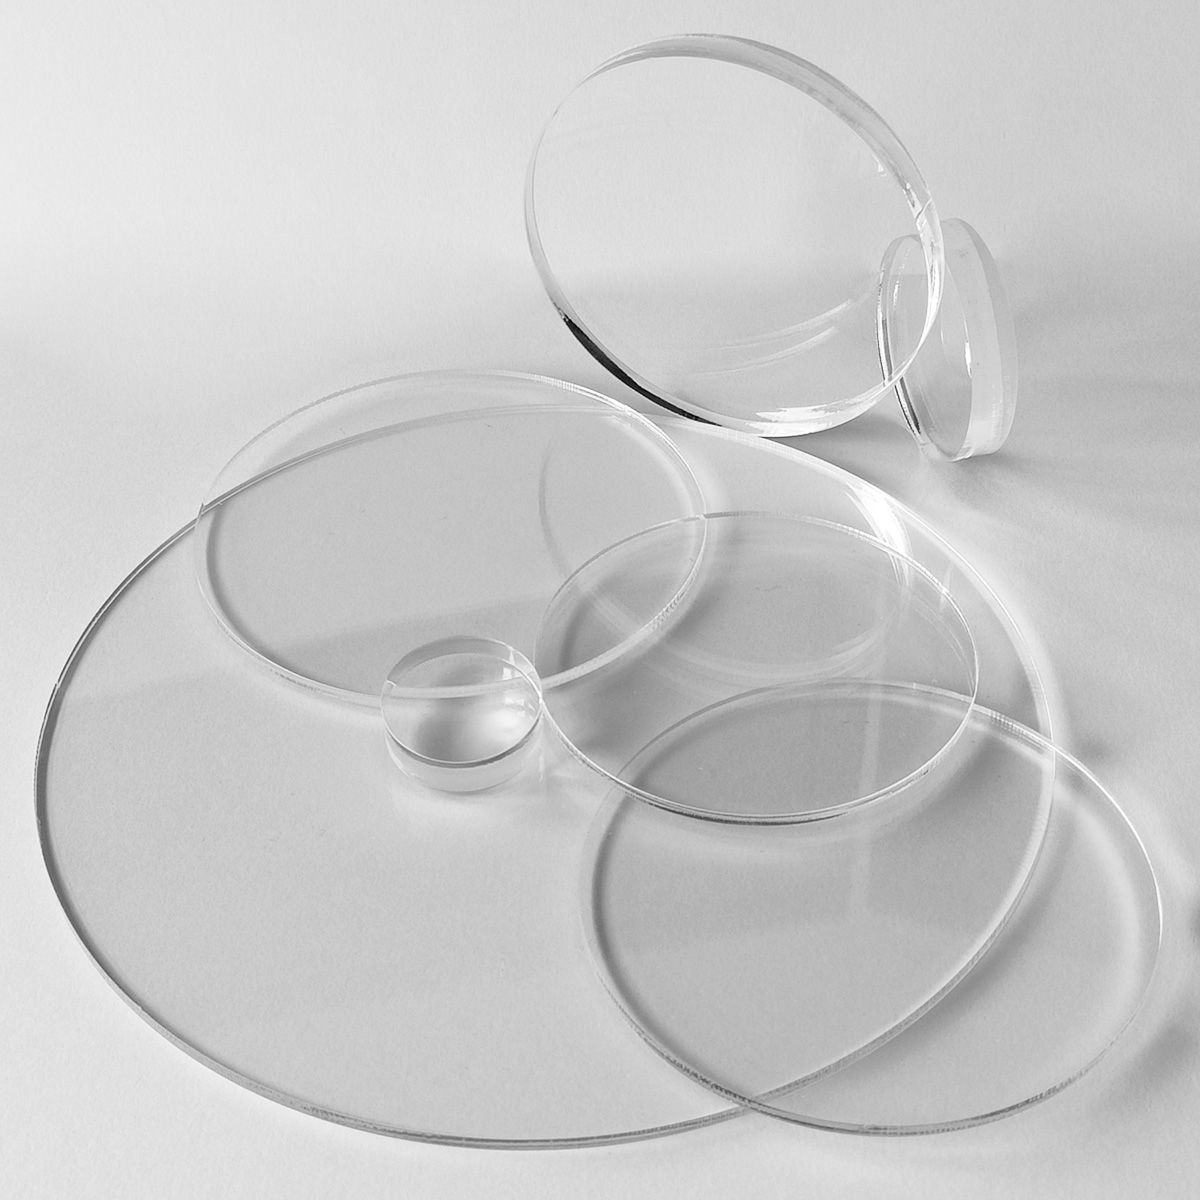 Acrylglas 6mm GS PMMA Transparent Glasklar Zuschnitt Wunschgröße 85 €/qm 